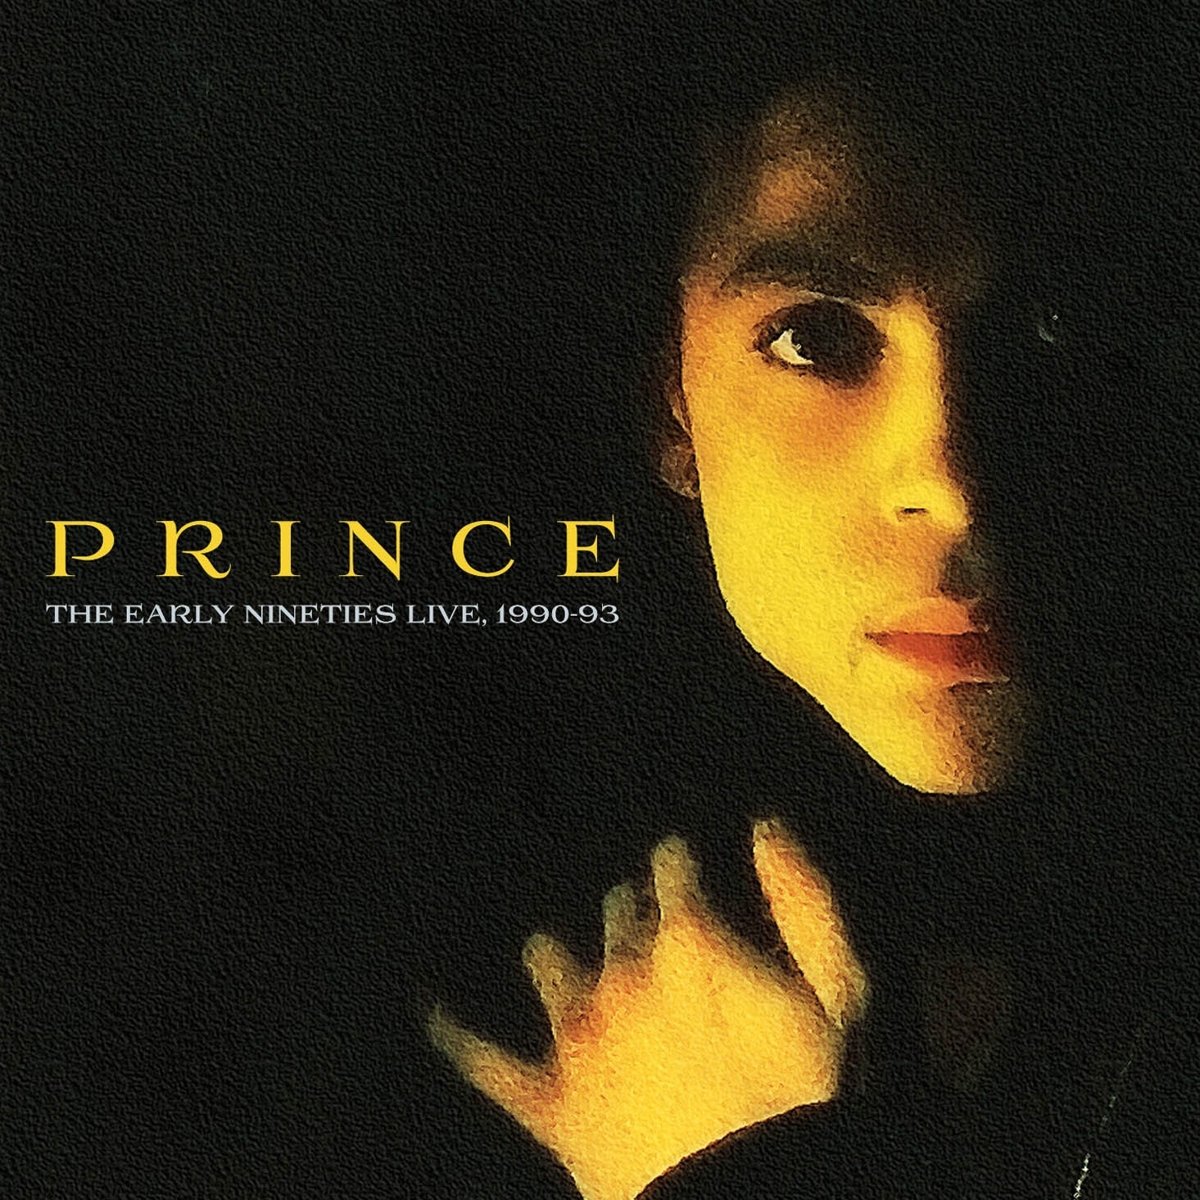 Audio Cd Prince - The Early Nineties Live, 1990-93 (5 Cd) NUOVO SIGILLATO, EDIZIONE DEL 01/11/2016 SUBITO DISPONIBILE